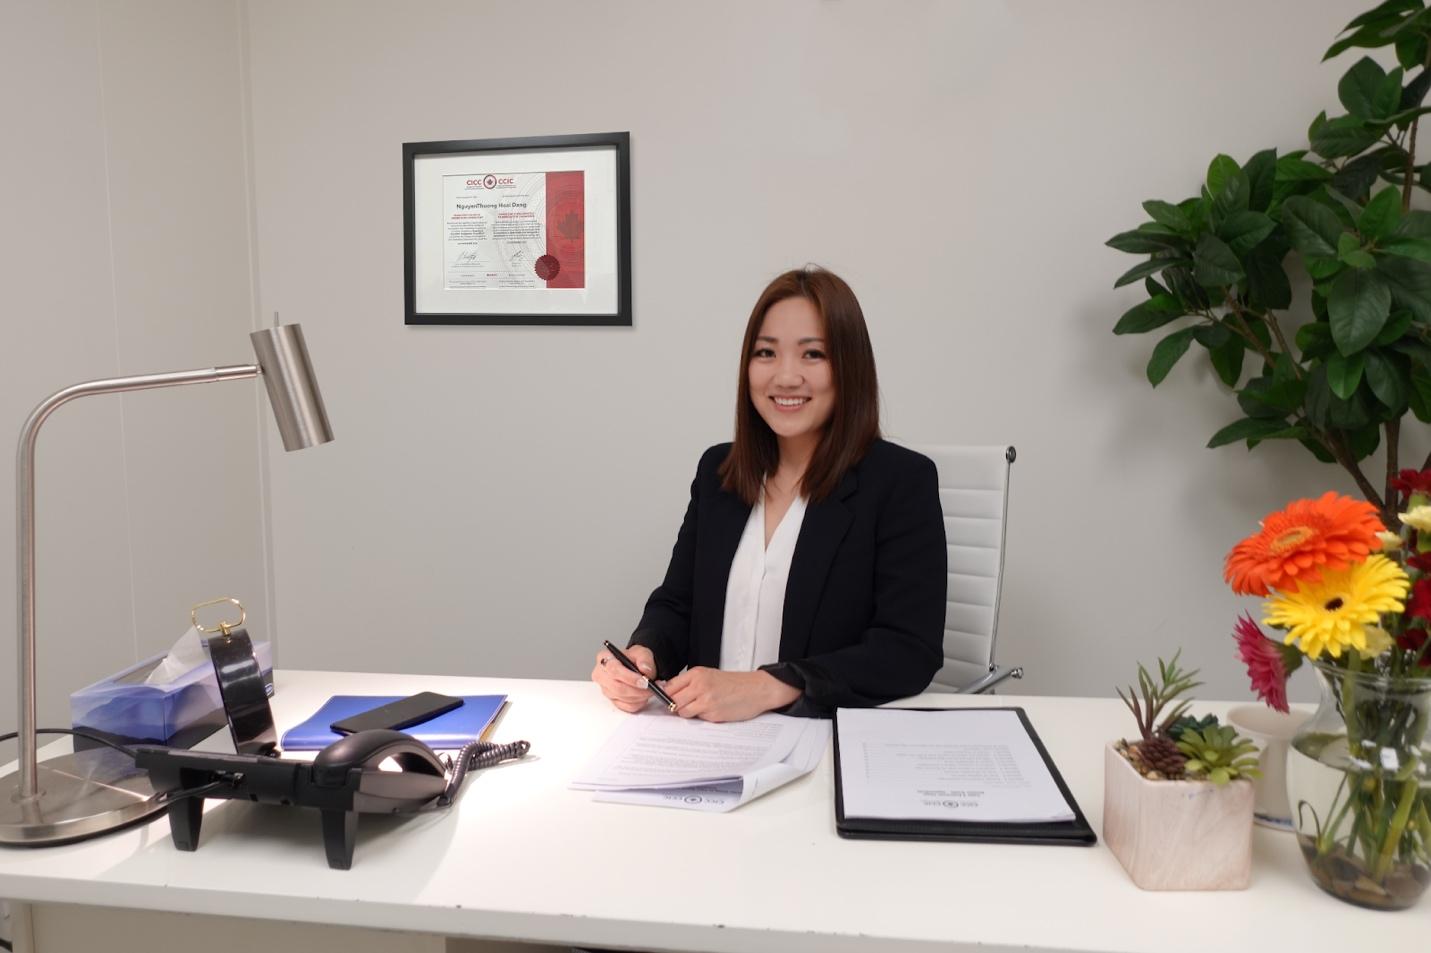 Chân dung nữ CEO gốc Việt giữ vị trí cố vấn chuyên môn tại Hội đồng cố vấn di trú Canada - Ảnh 3.